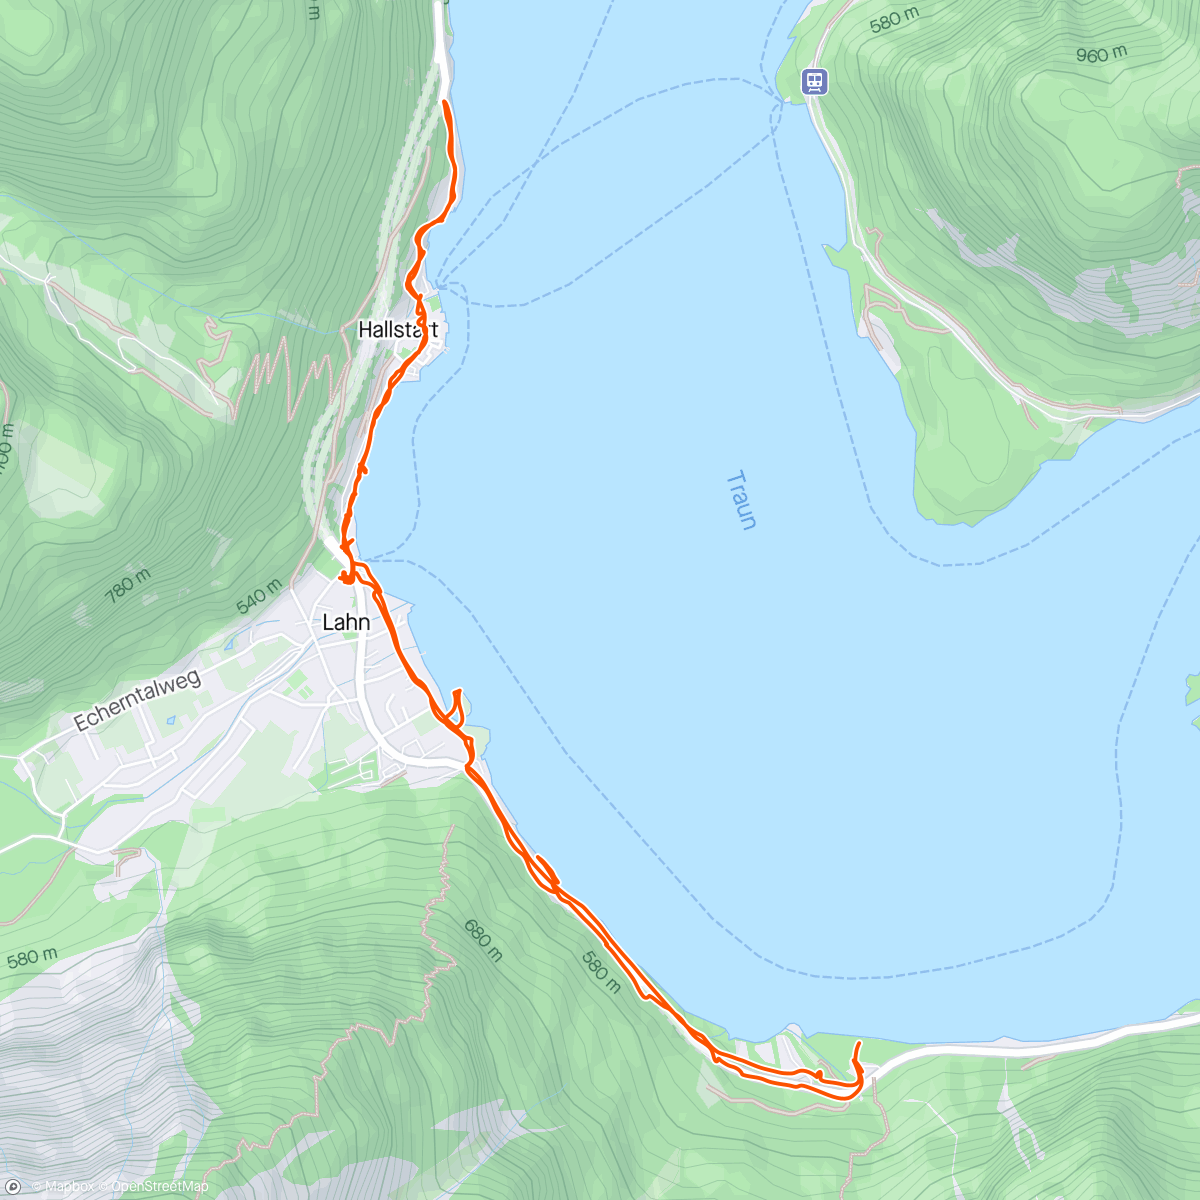 Map of the activity, Hallstatt